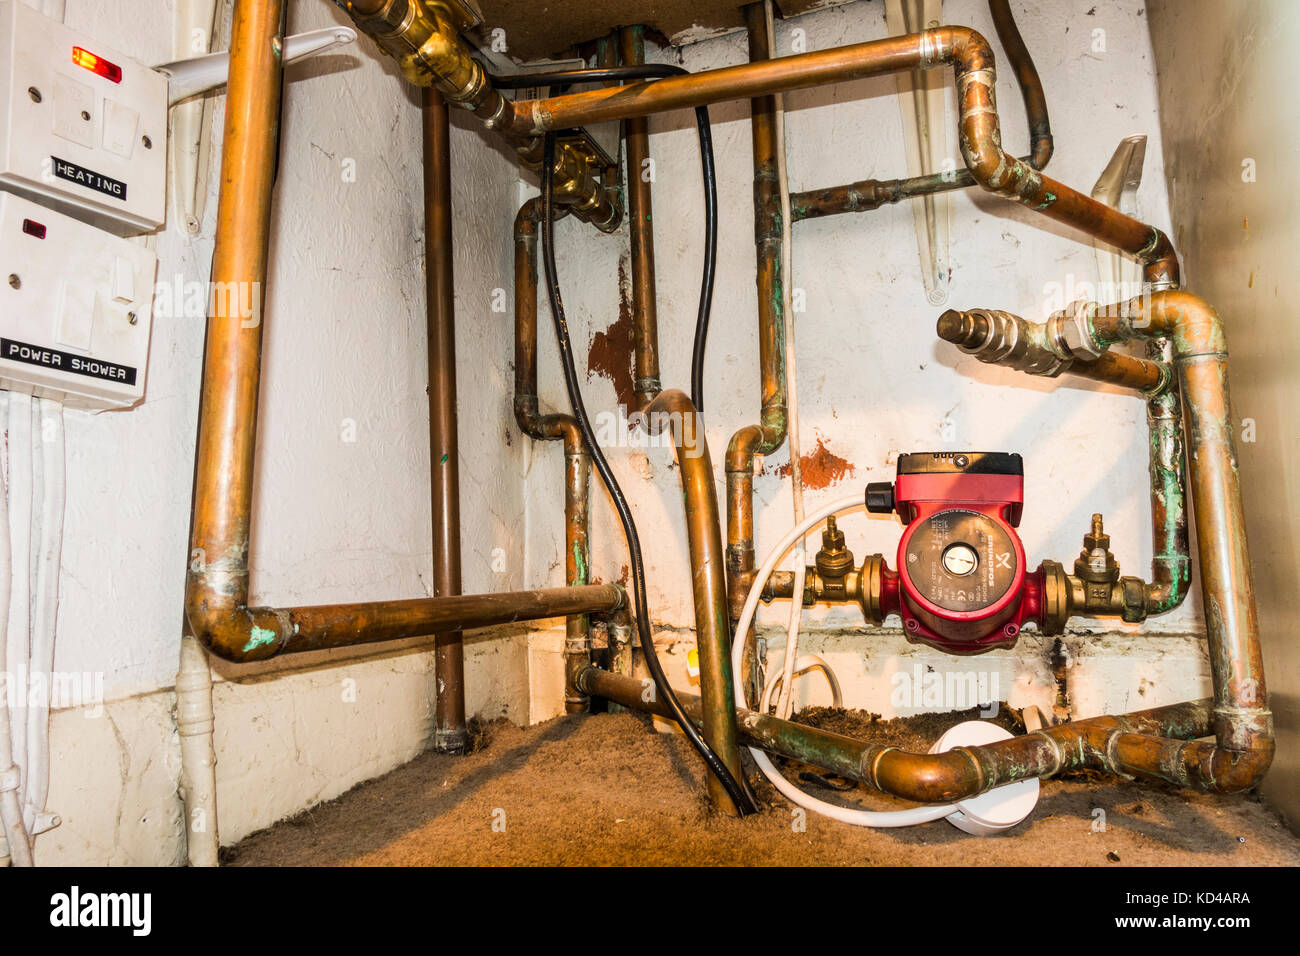 L'installation intérieure d'un système de chauffage central, avec large vue de la pompe, le câblage et la tuyauterie de cuivre, à l'intérieur d'une armoire d'une maison en Angleterre, Royaume-Uni. Banque D'Images